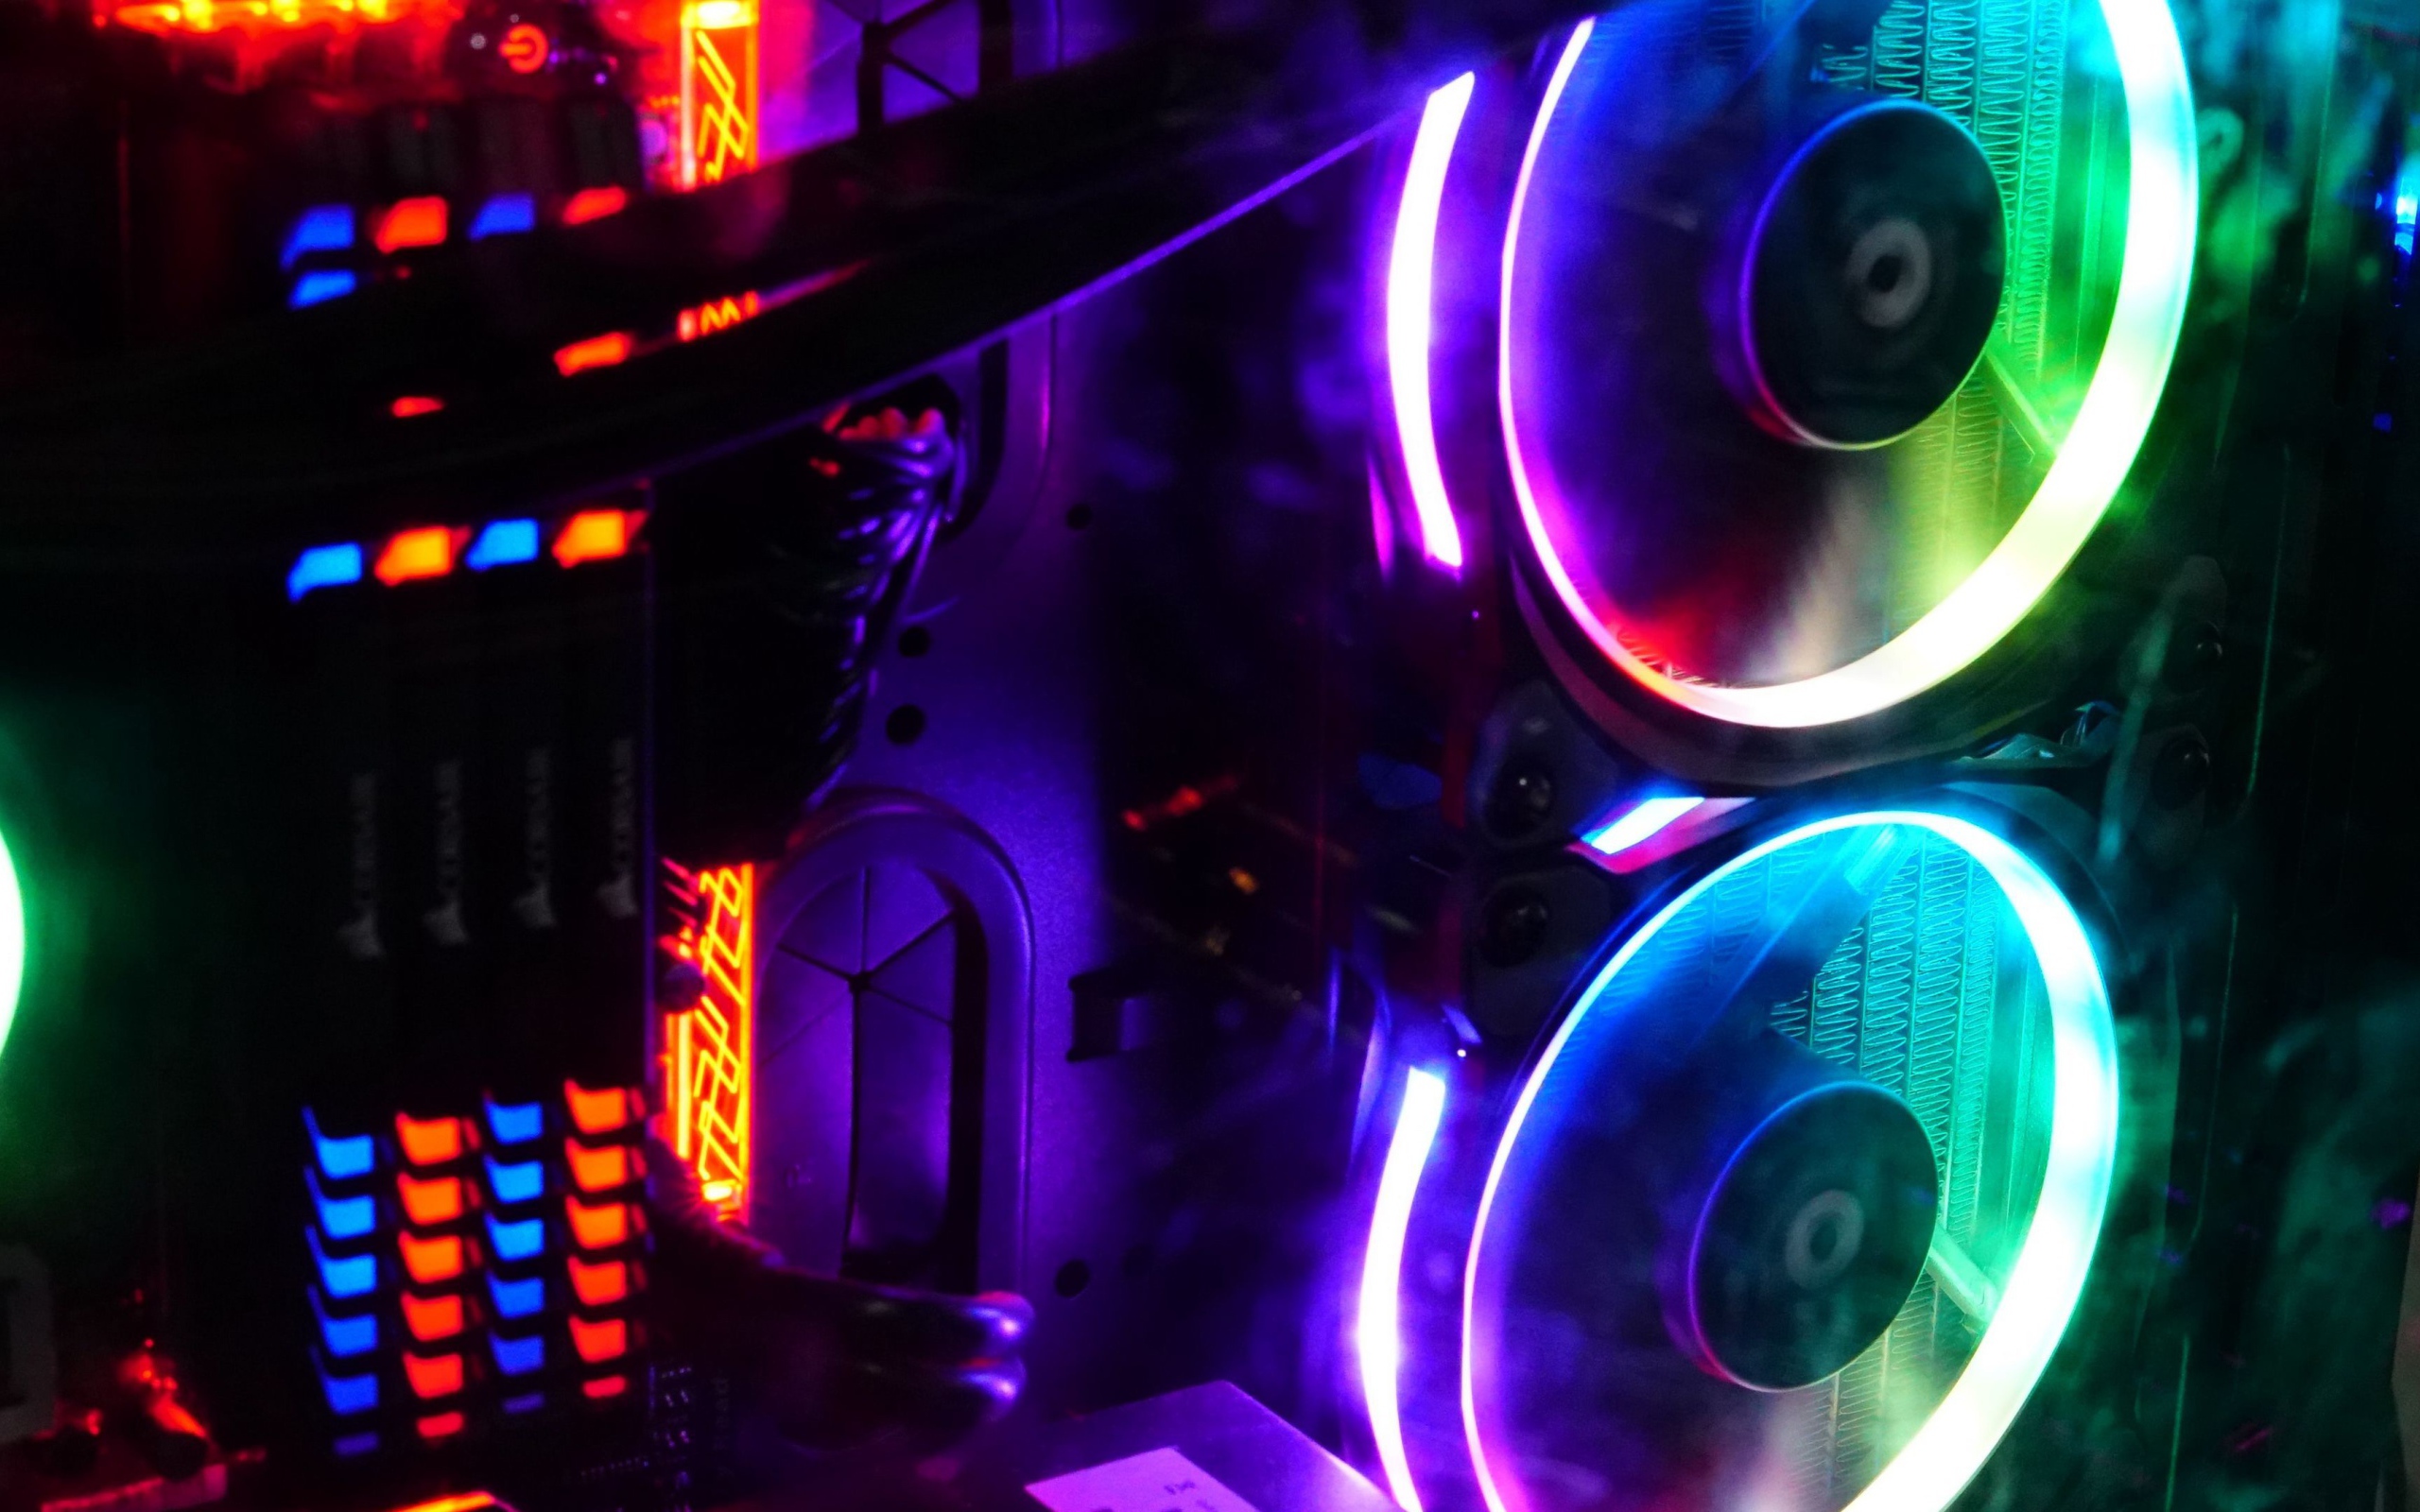 Neon computer fan